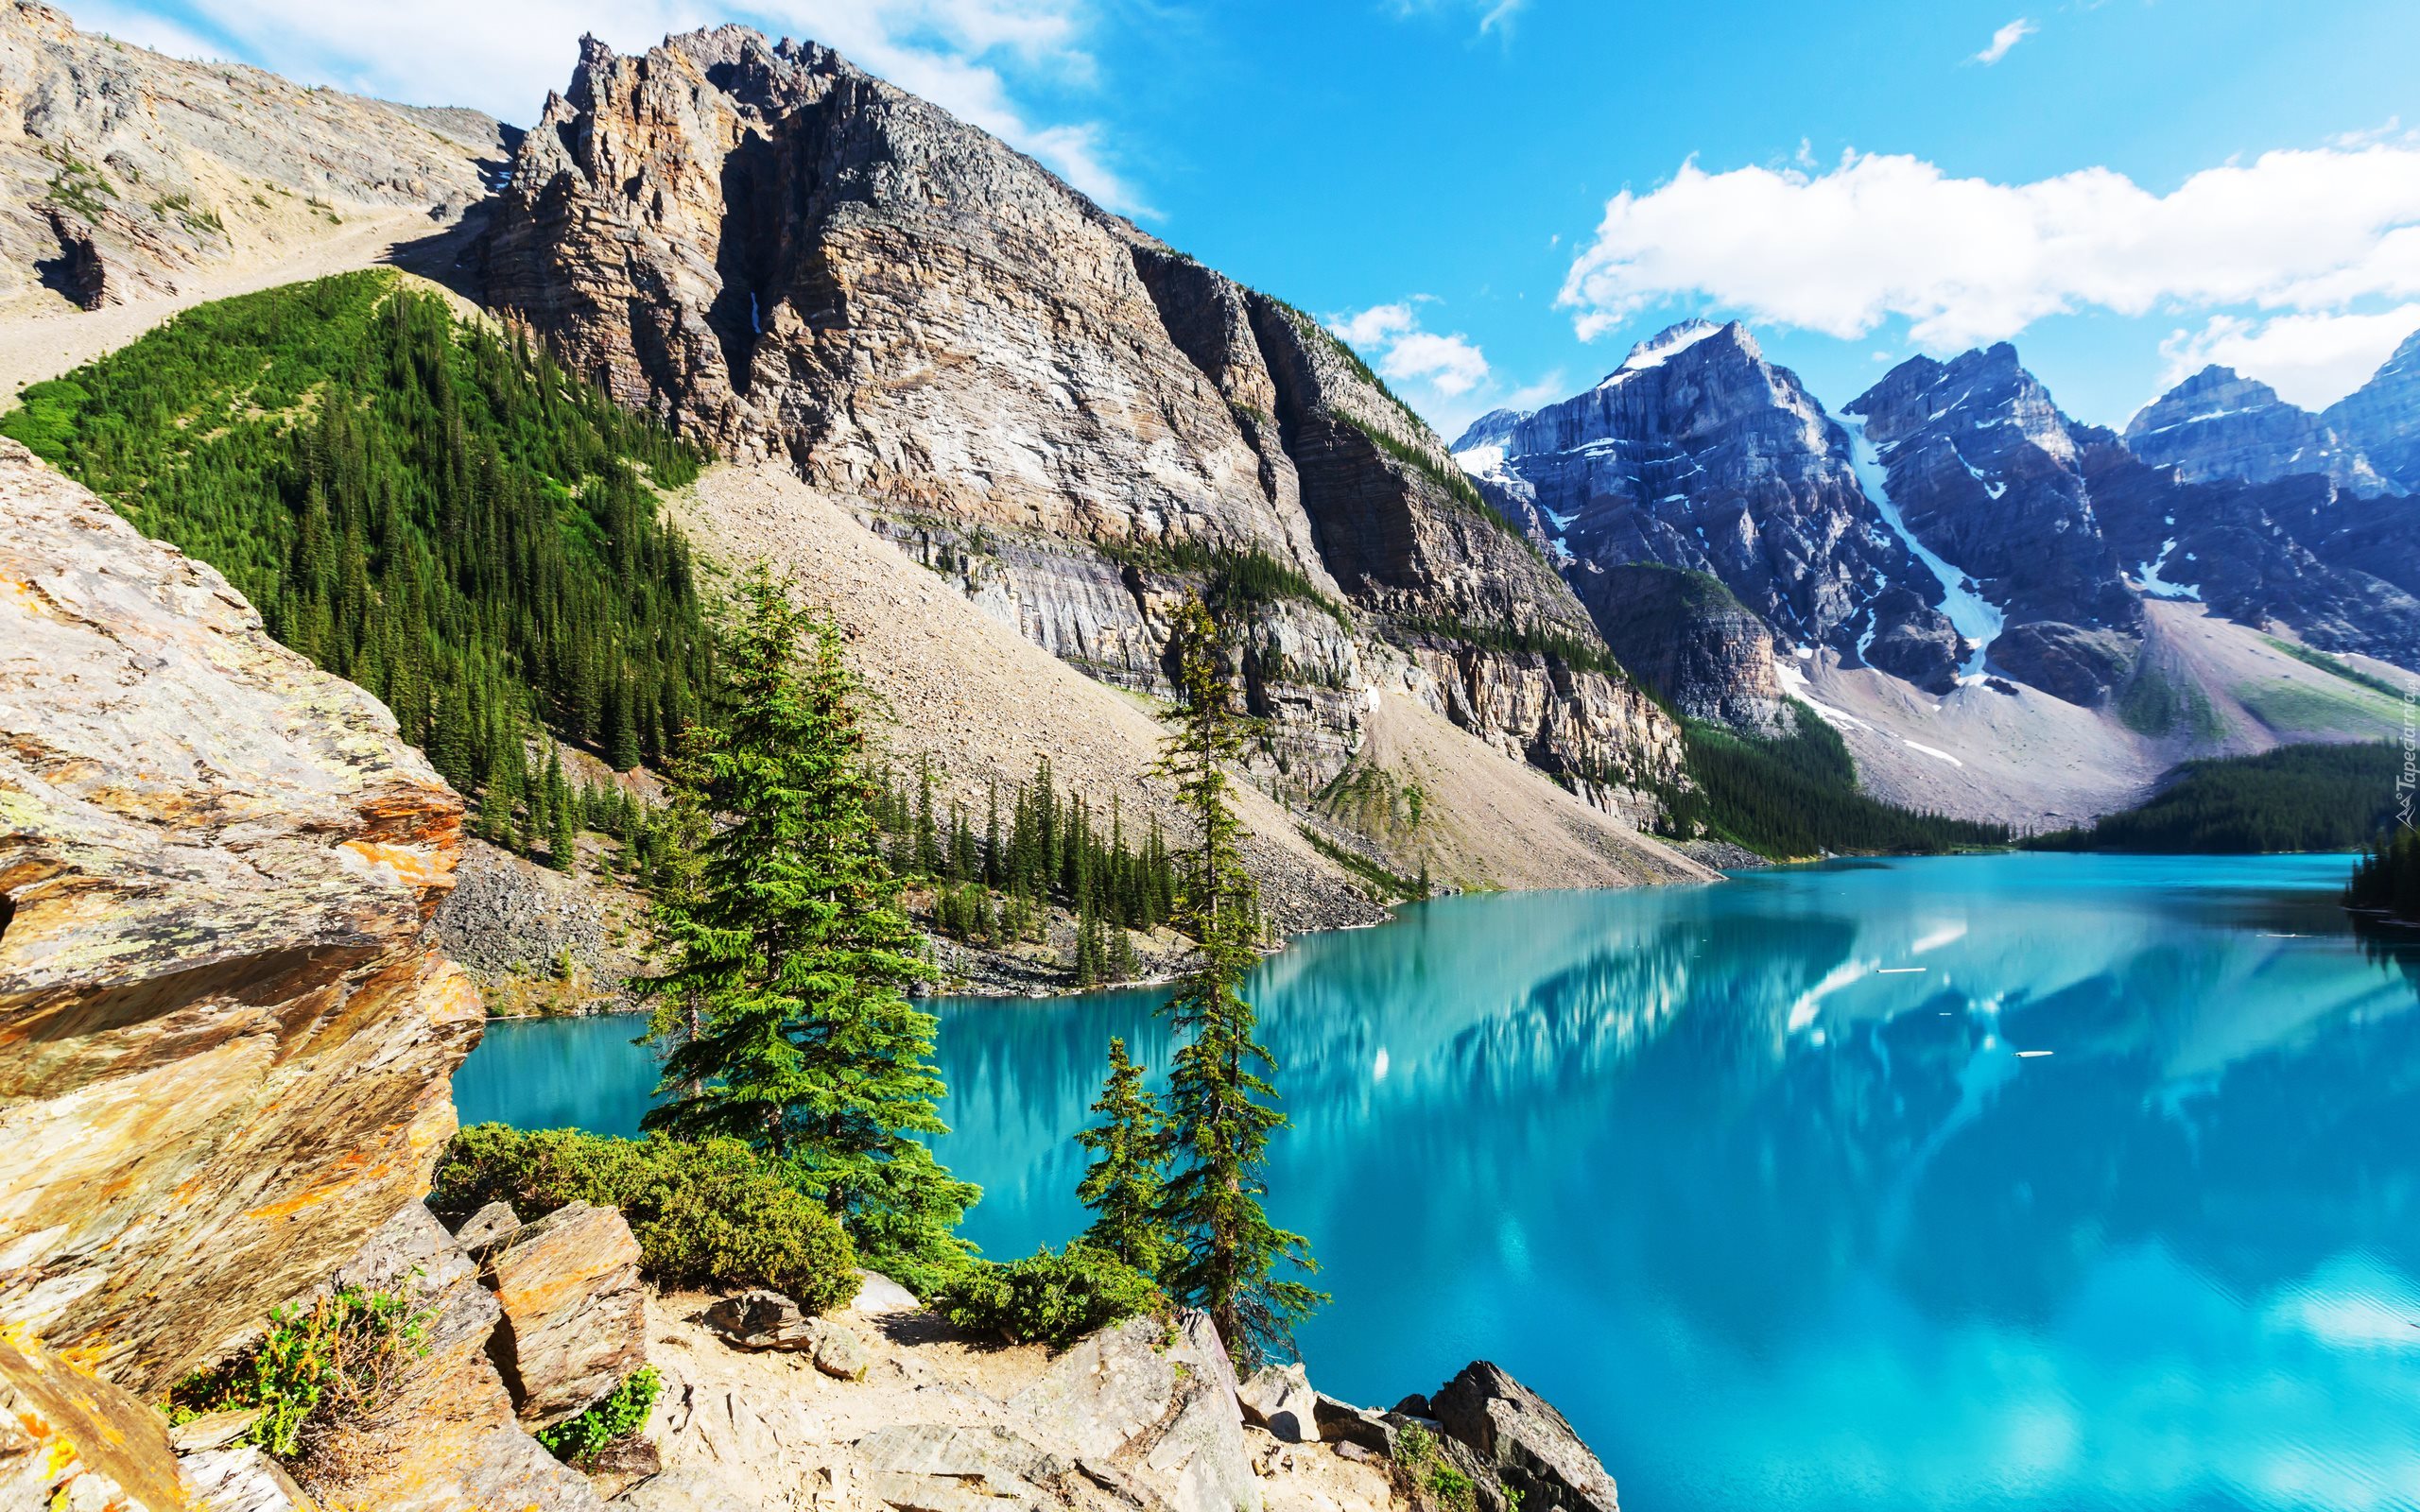 Kanada, Park Narodowy Banff, Jezioro Moraine